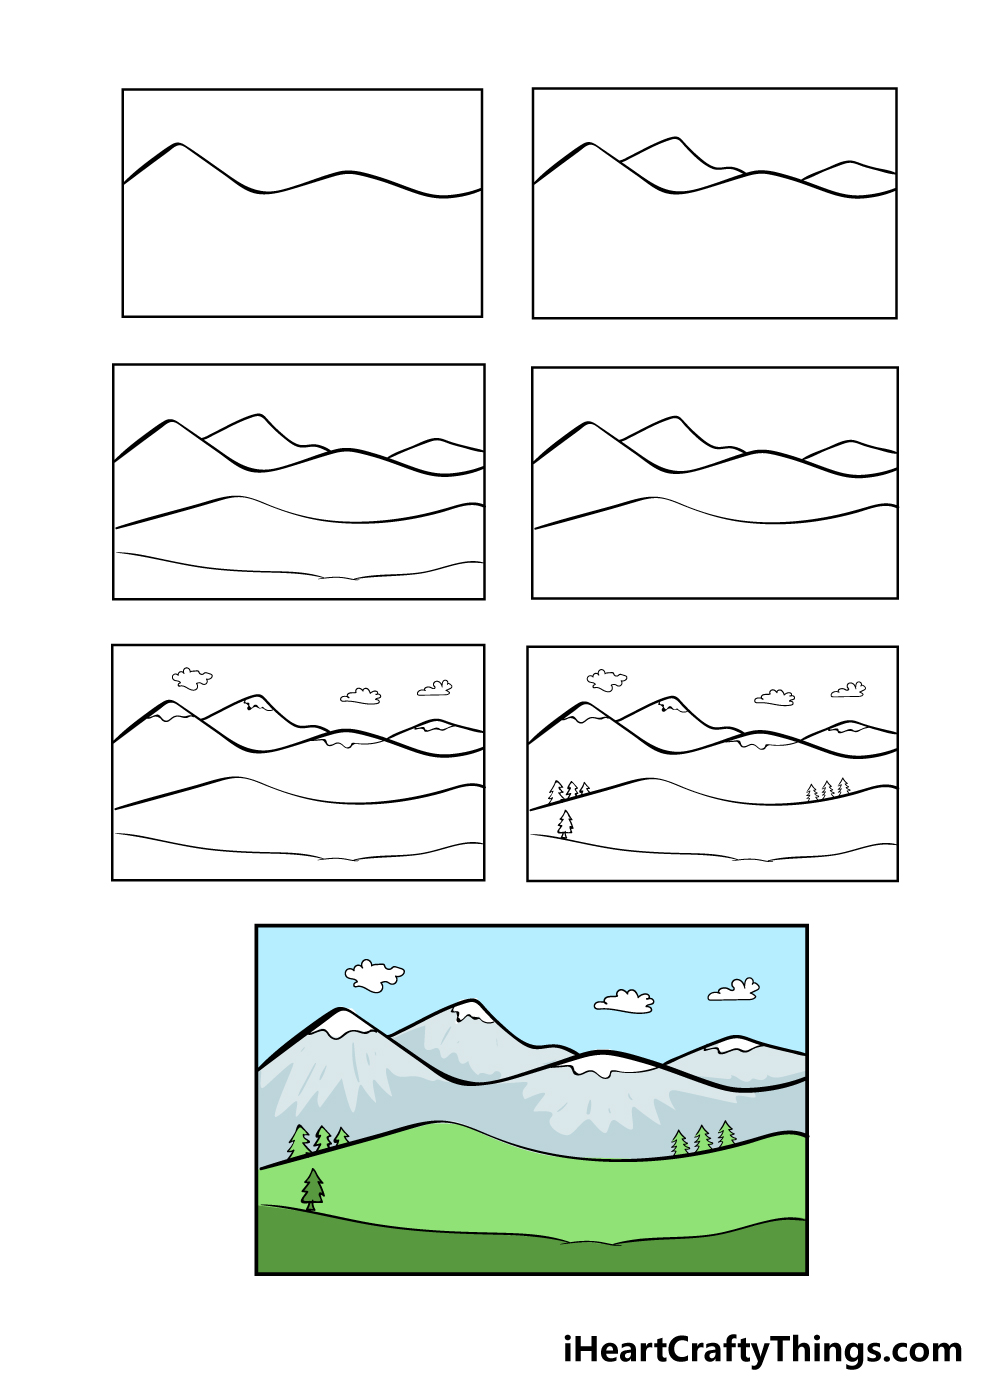 mountain in7 steps - Hướng dẫn cách vẽ núi đơn giản với 7 bước cơ bản